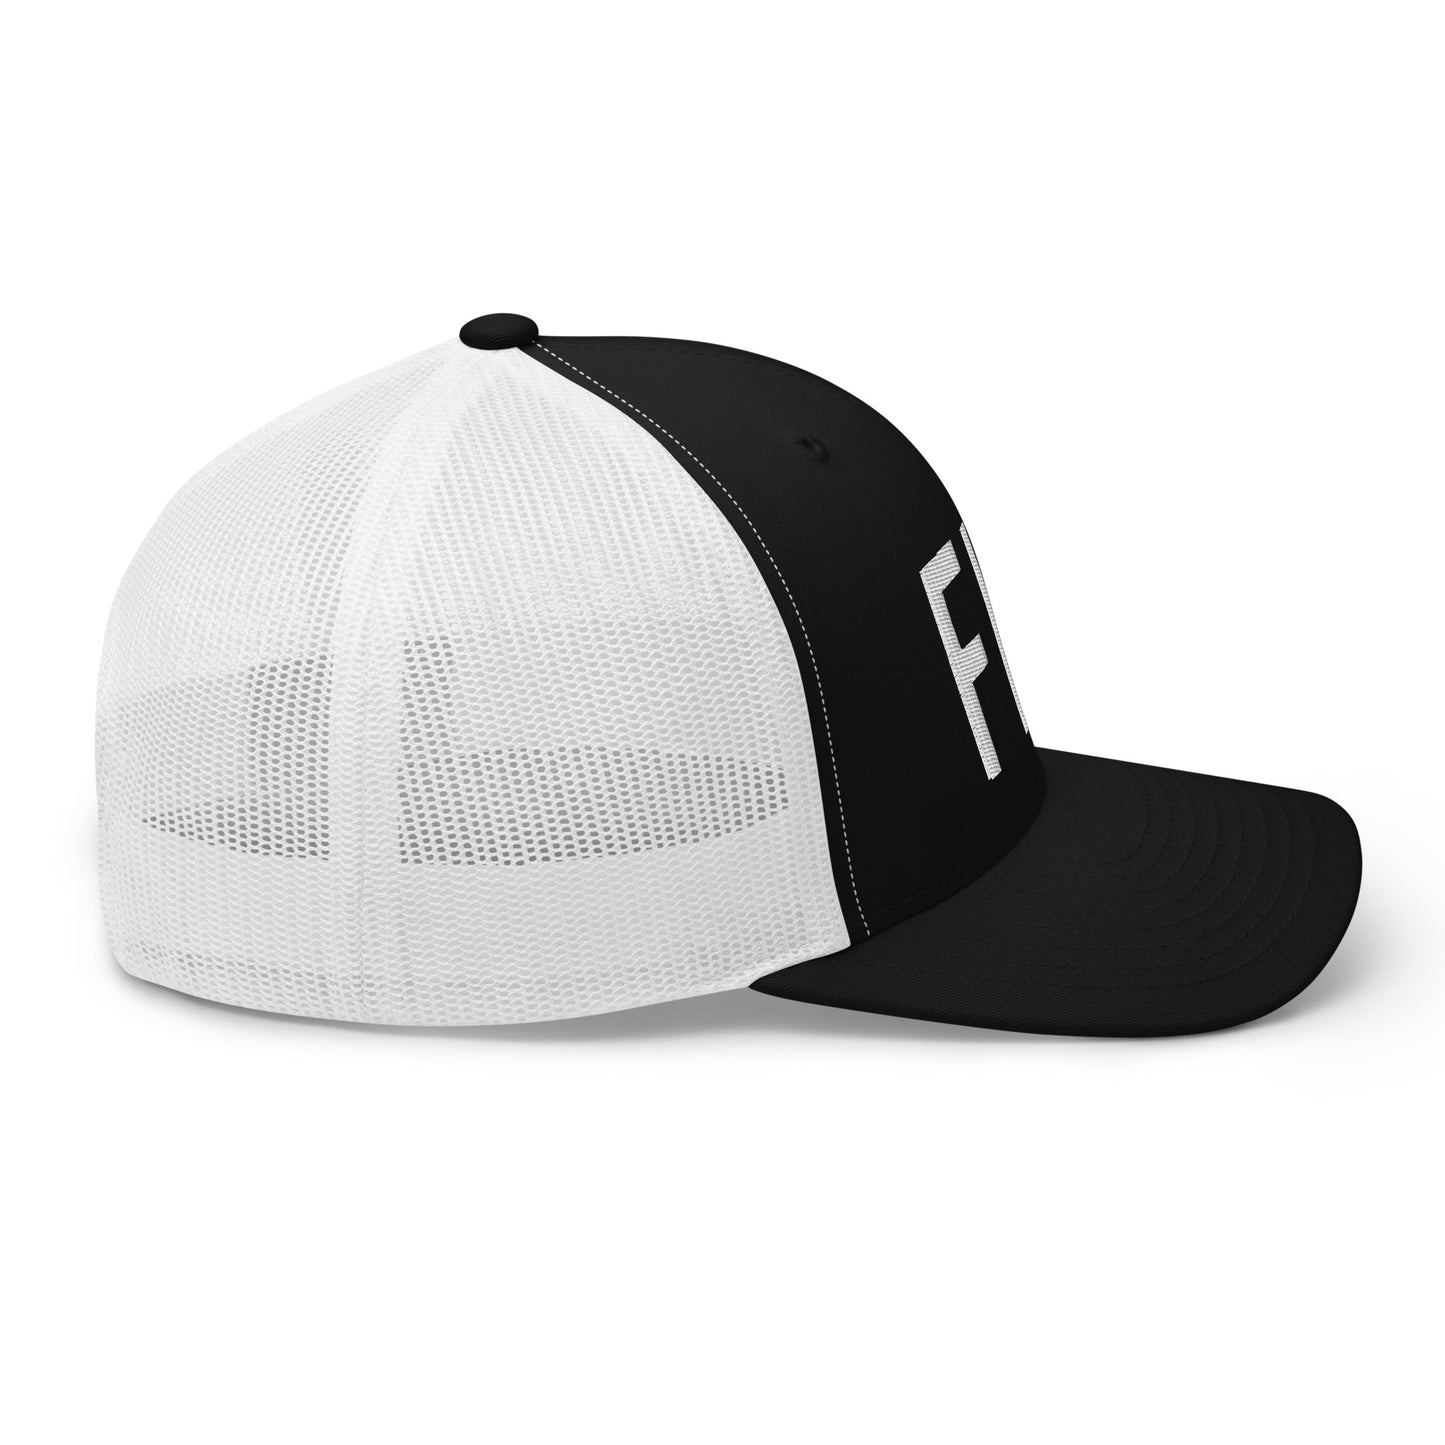 FLY - Butterfly Trucker Hat (w)